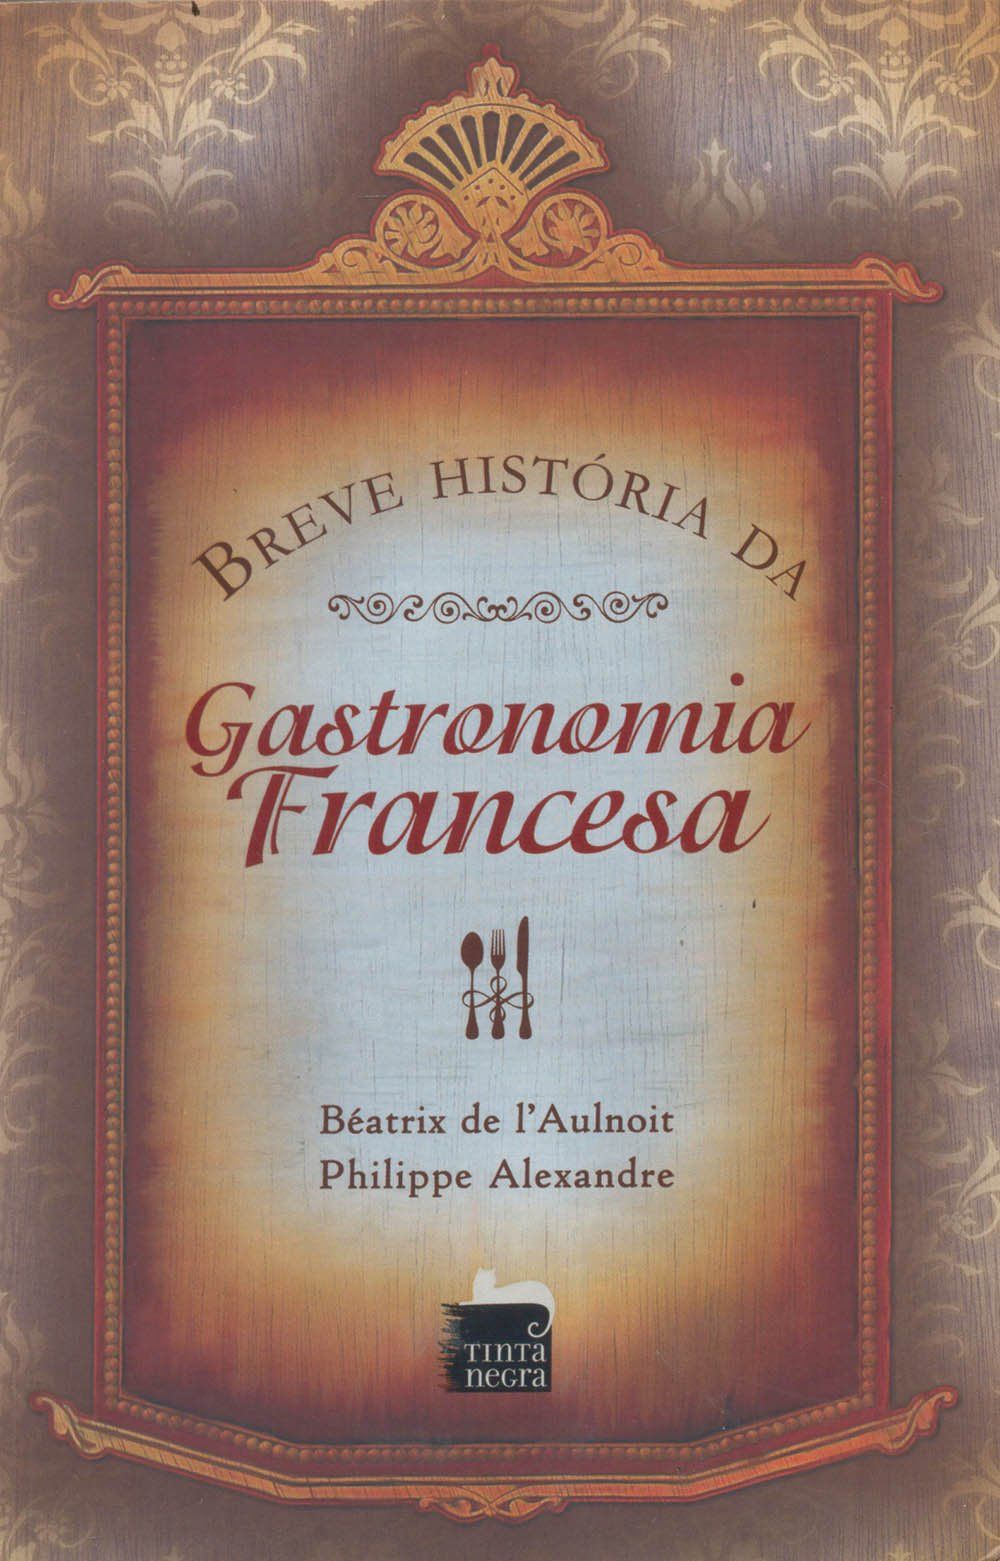 BREVE HISTORIA DA GASTRONOMIA FRANCESA